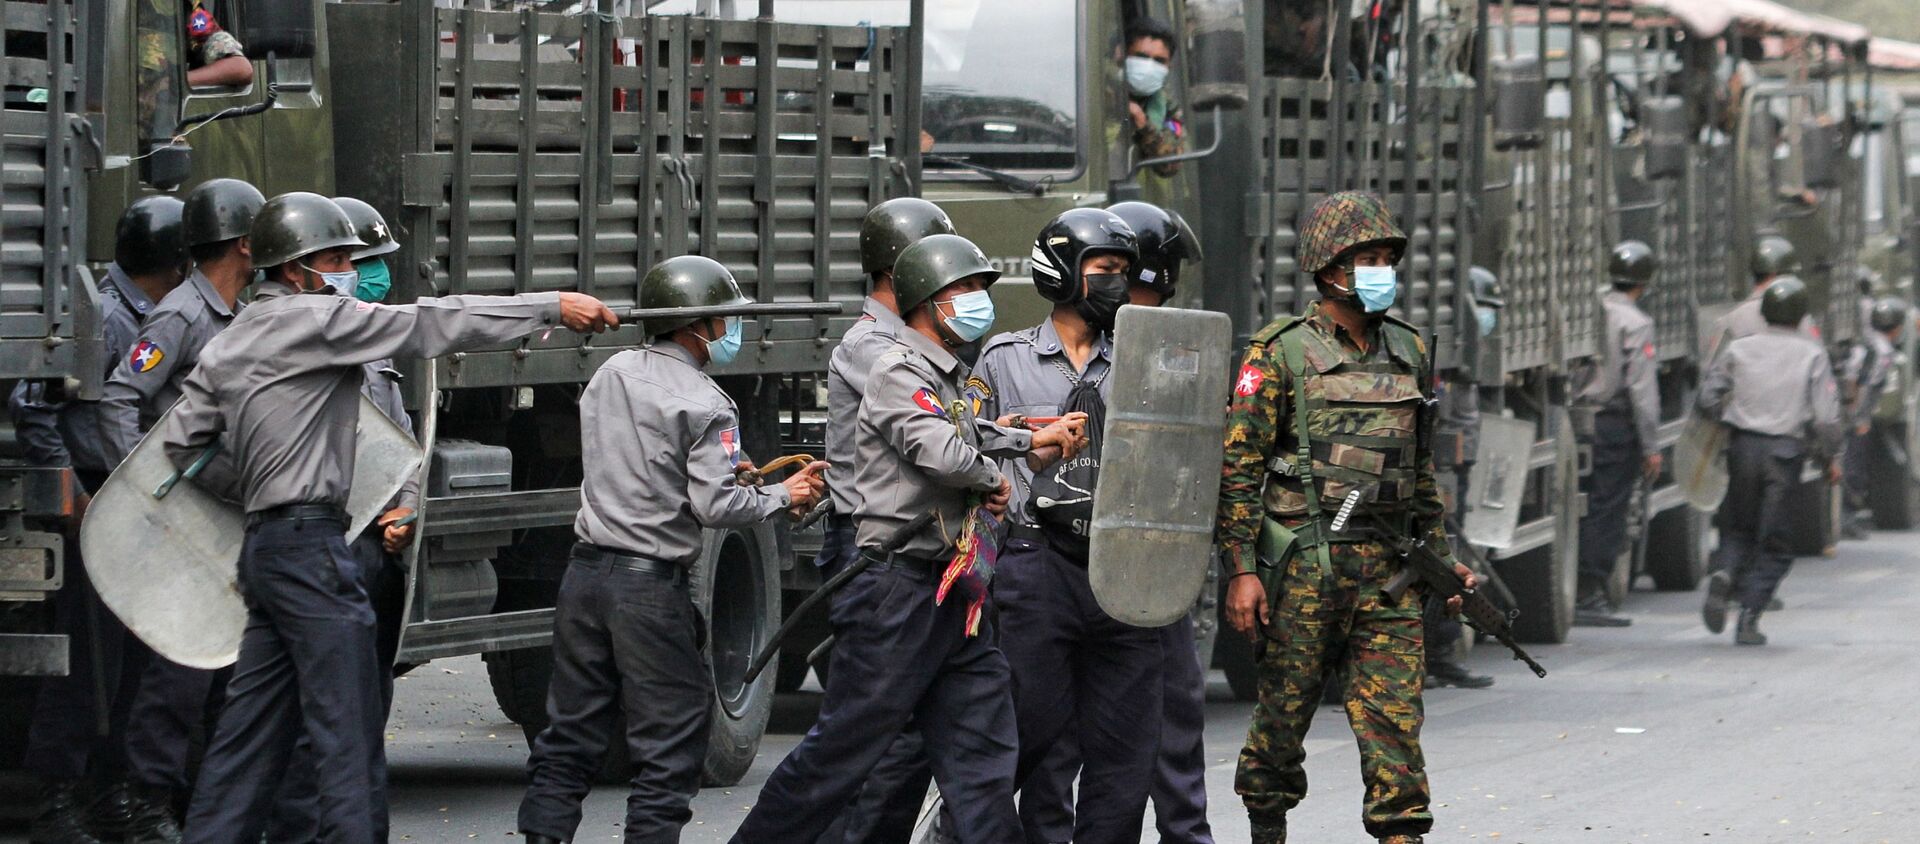 Cảnh sát và binh lính được nhìn thấy trong một cuộc biểu tình chống lại cuộc đảo chính quân sự, ở Mandalay, Myanmar, ngày 20 tháng 2 năm 2021 - Sputnik Việt Nam, 1920, 19.03.2021